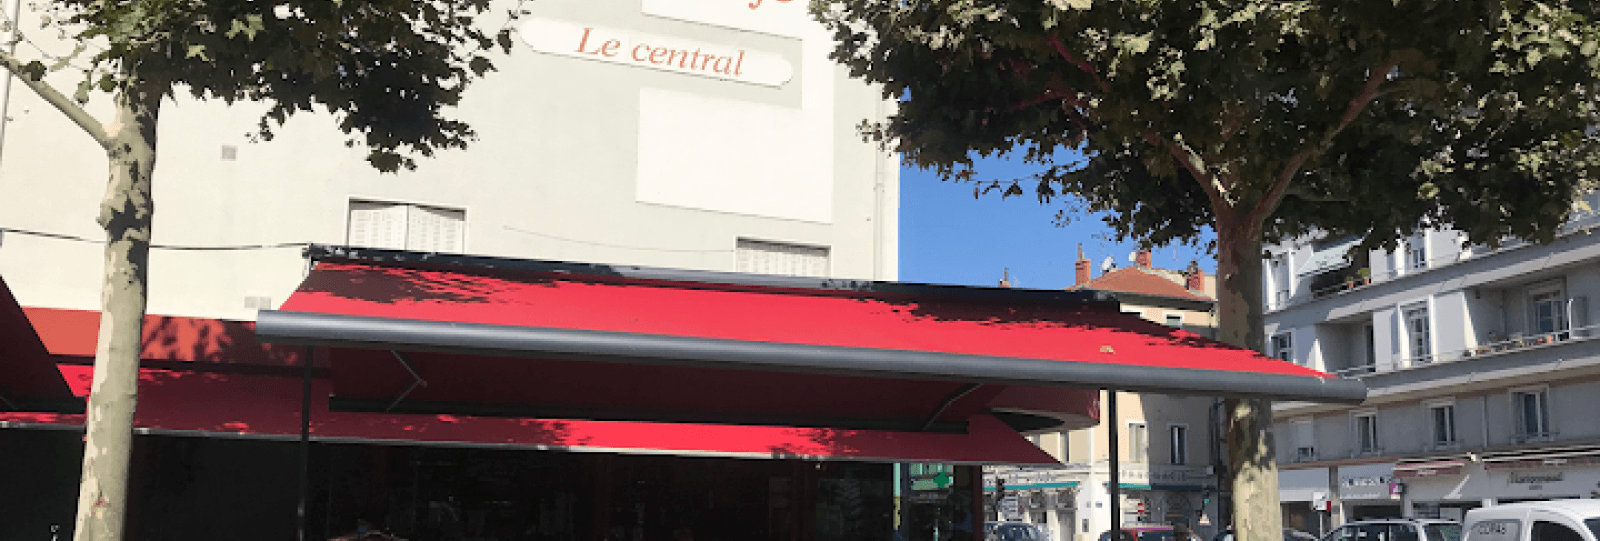 Le Central Café